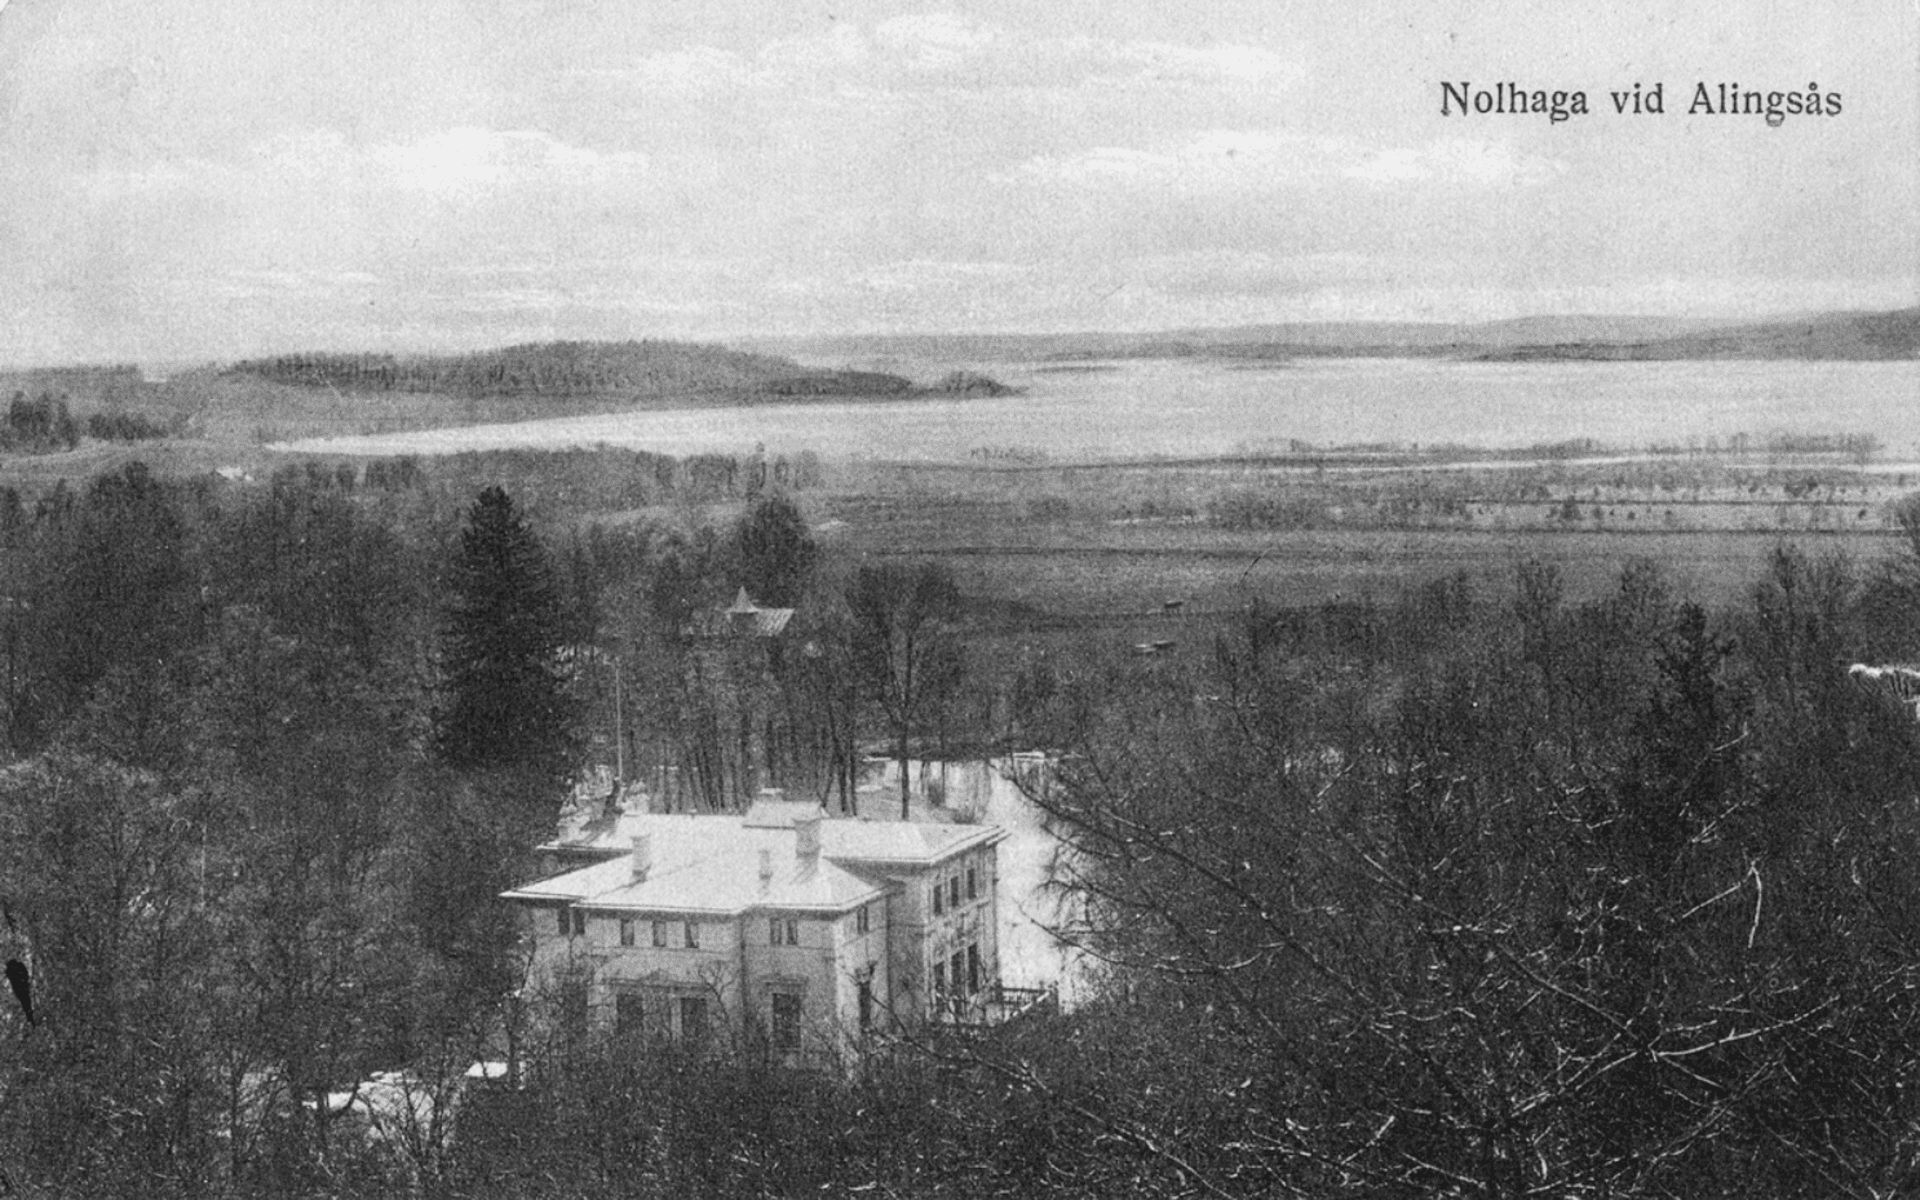 Vykort med Nolhaga slott i förgrunden och sjön Mjörn i bakgrunden, däremellan träd och ängar. Fotografiet taget från Nolhaga berg. Fotografering - 1895-1925.